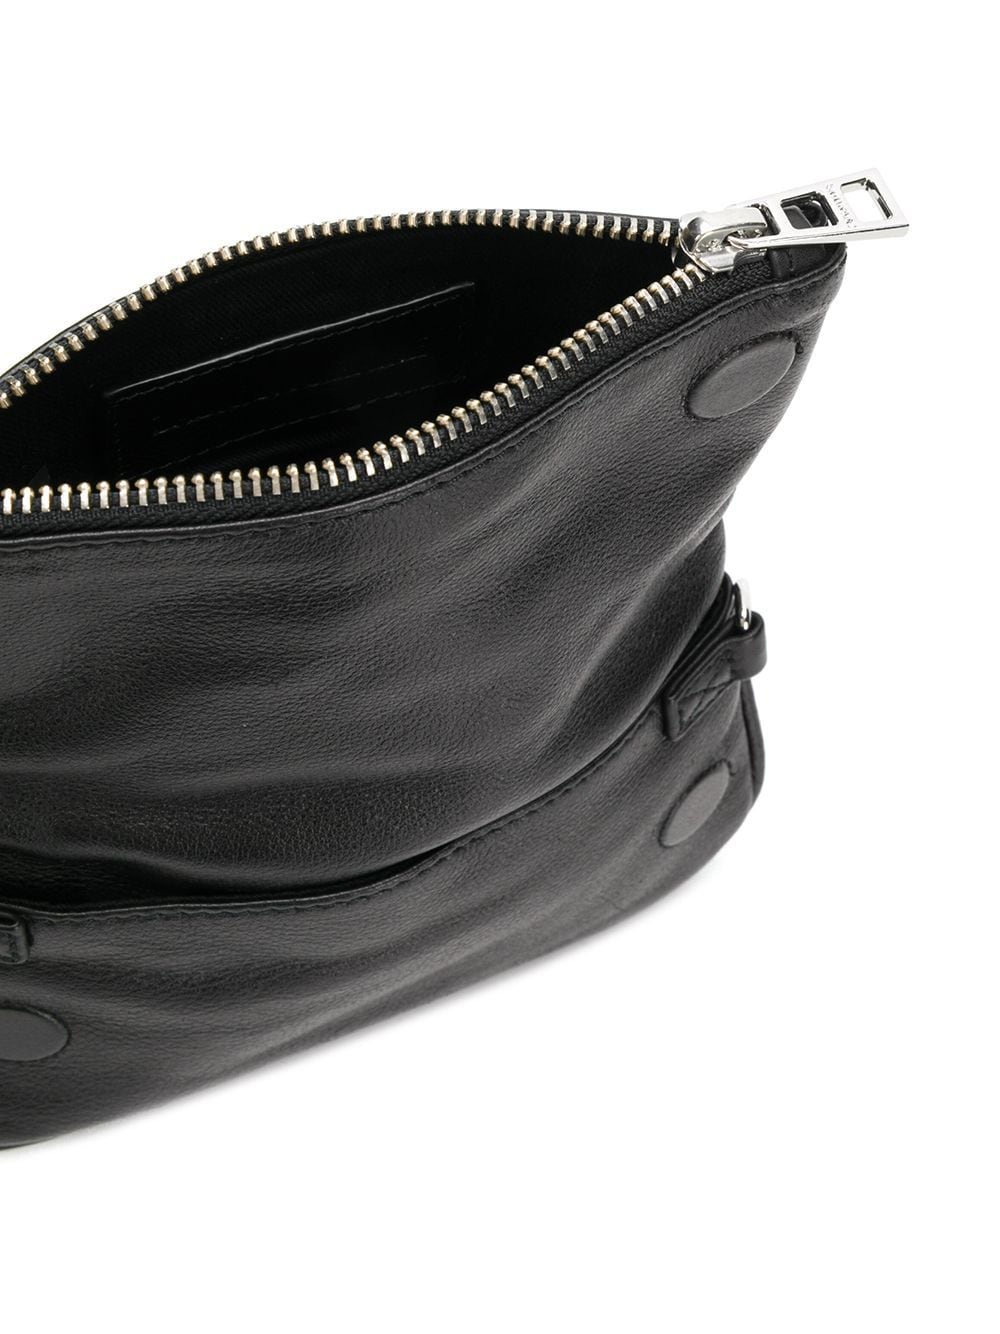 IetpShops, Zadig & Voltaire 'Rock Nano' shoulder bag